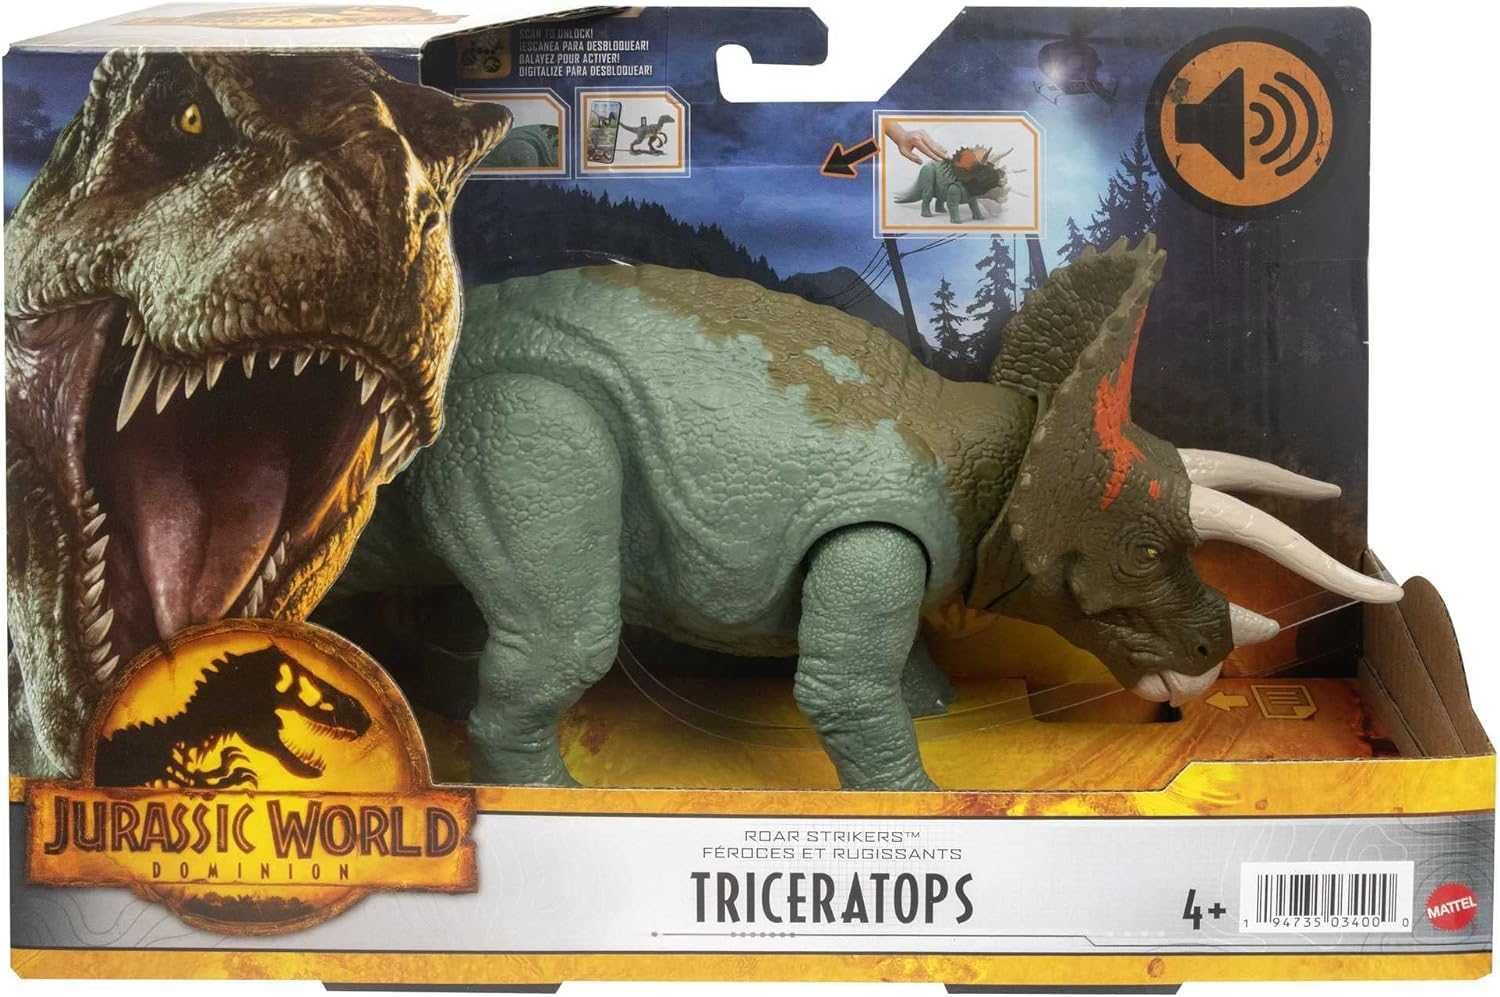 Jurassic World Triceratops Світ Юрського періоду Динозавр Трицератопс.